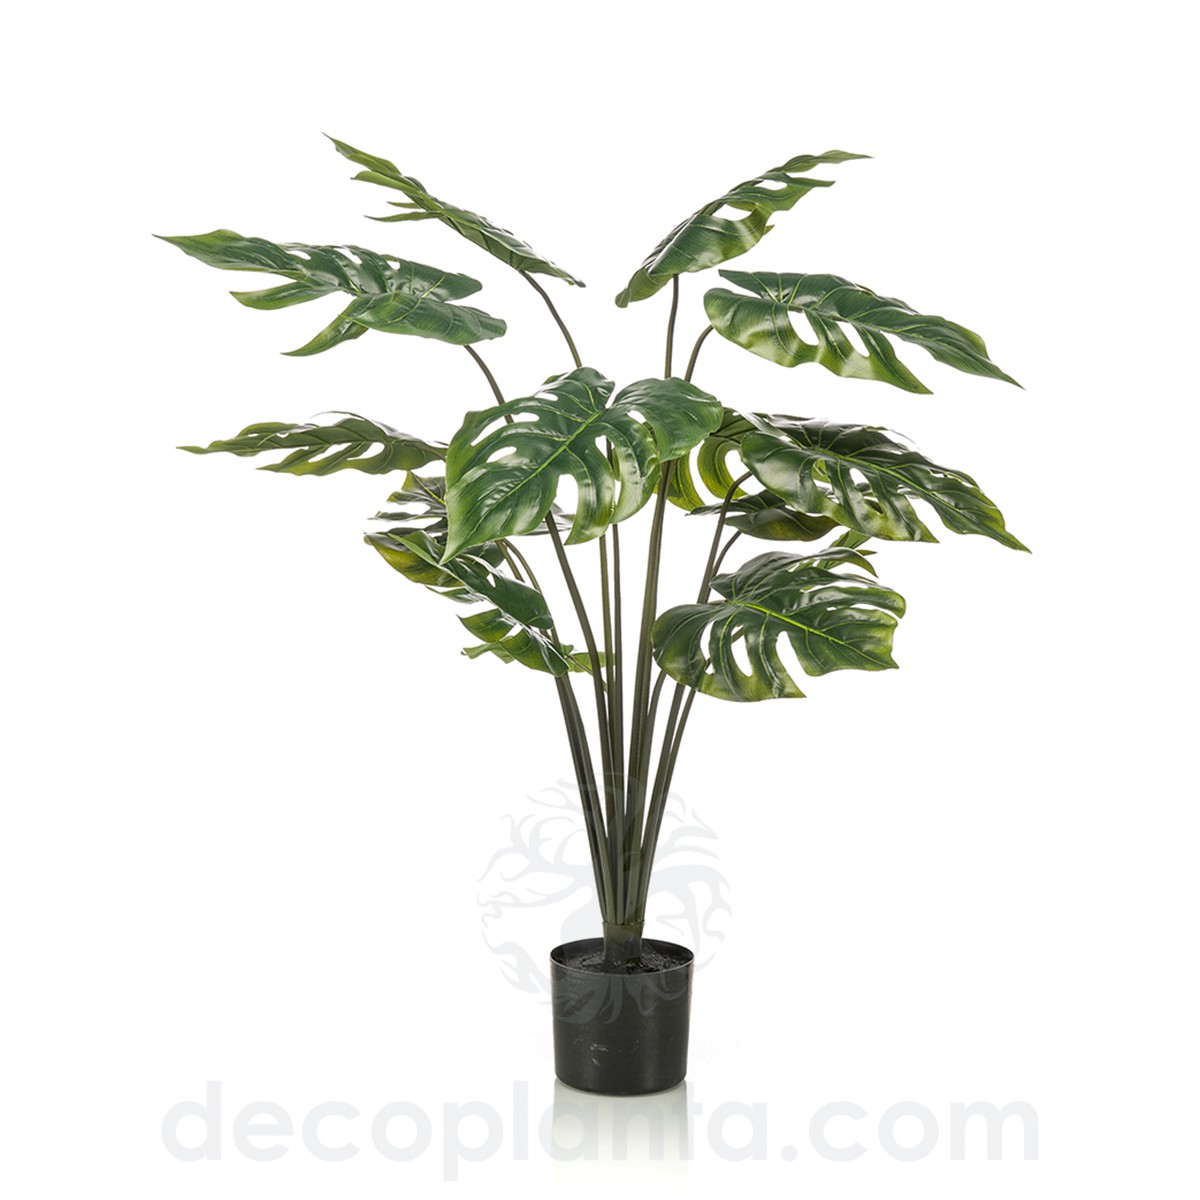 Planta artificial de decoración Palmera Deluxe de la marca Decoplanta